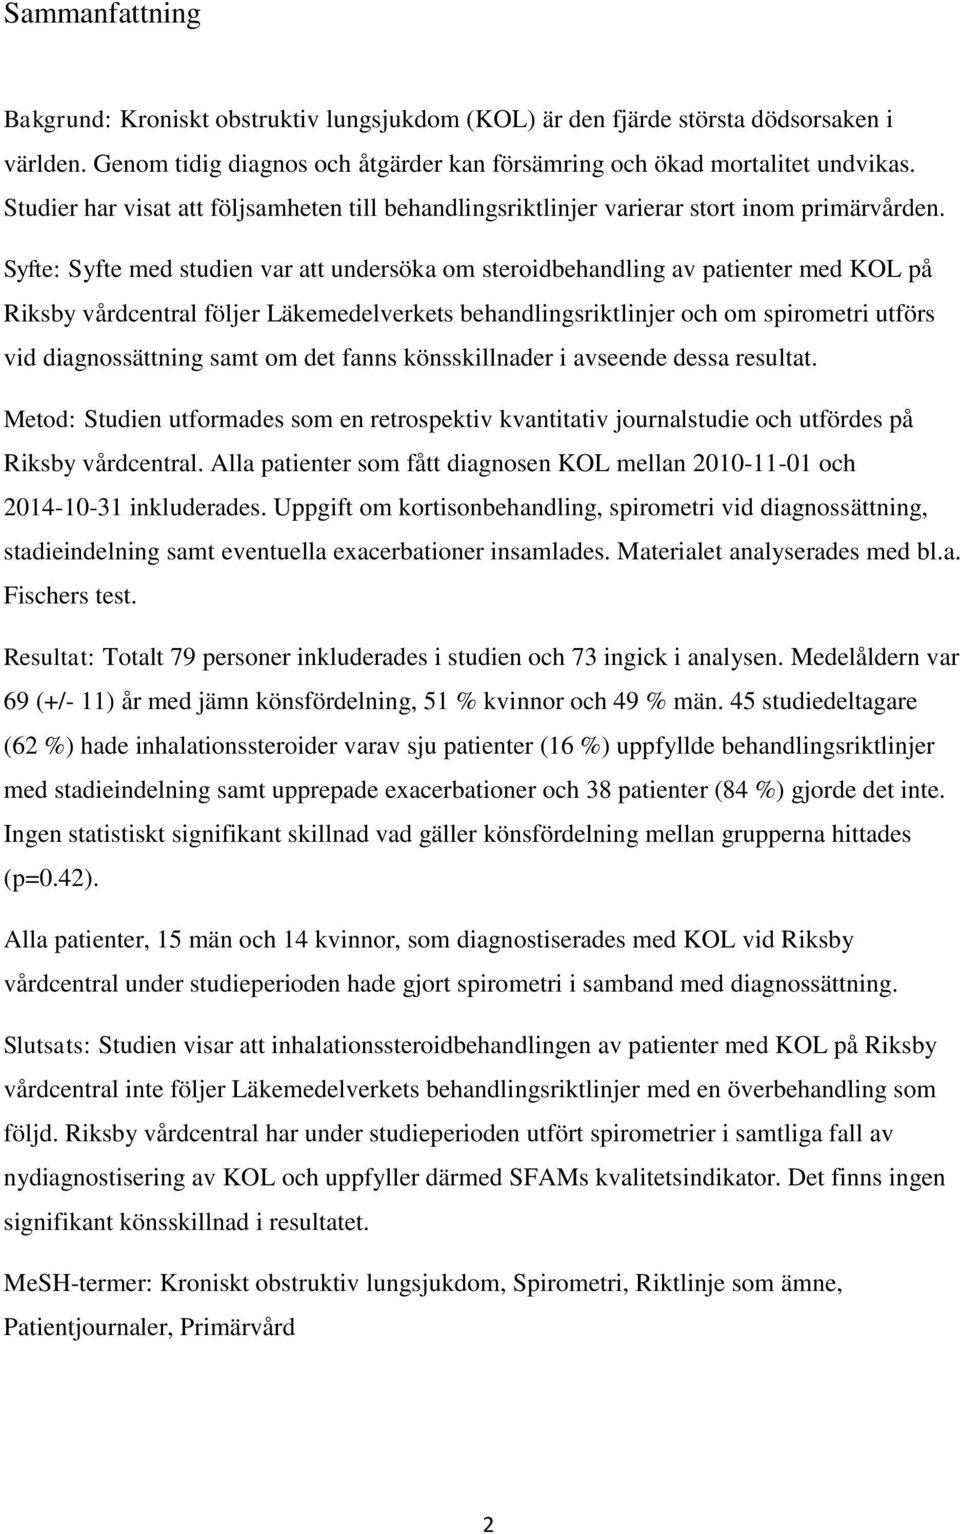 Syfte: Syfte med studien var att undersöka om steroidbehandling av patienter med KOL på Riksby vårdcentral följer Läkemedelverkets behandlingsriktlinjer och om spirometri utförs vid diagnossättning